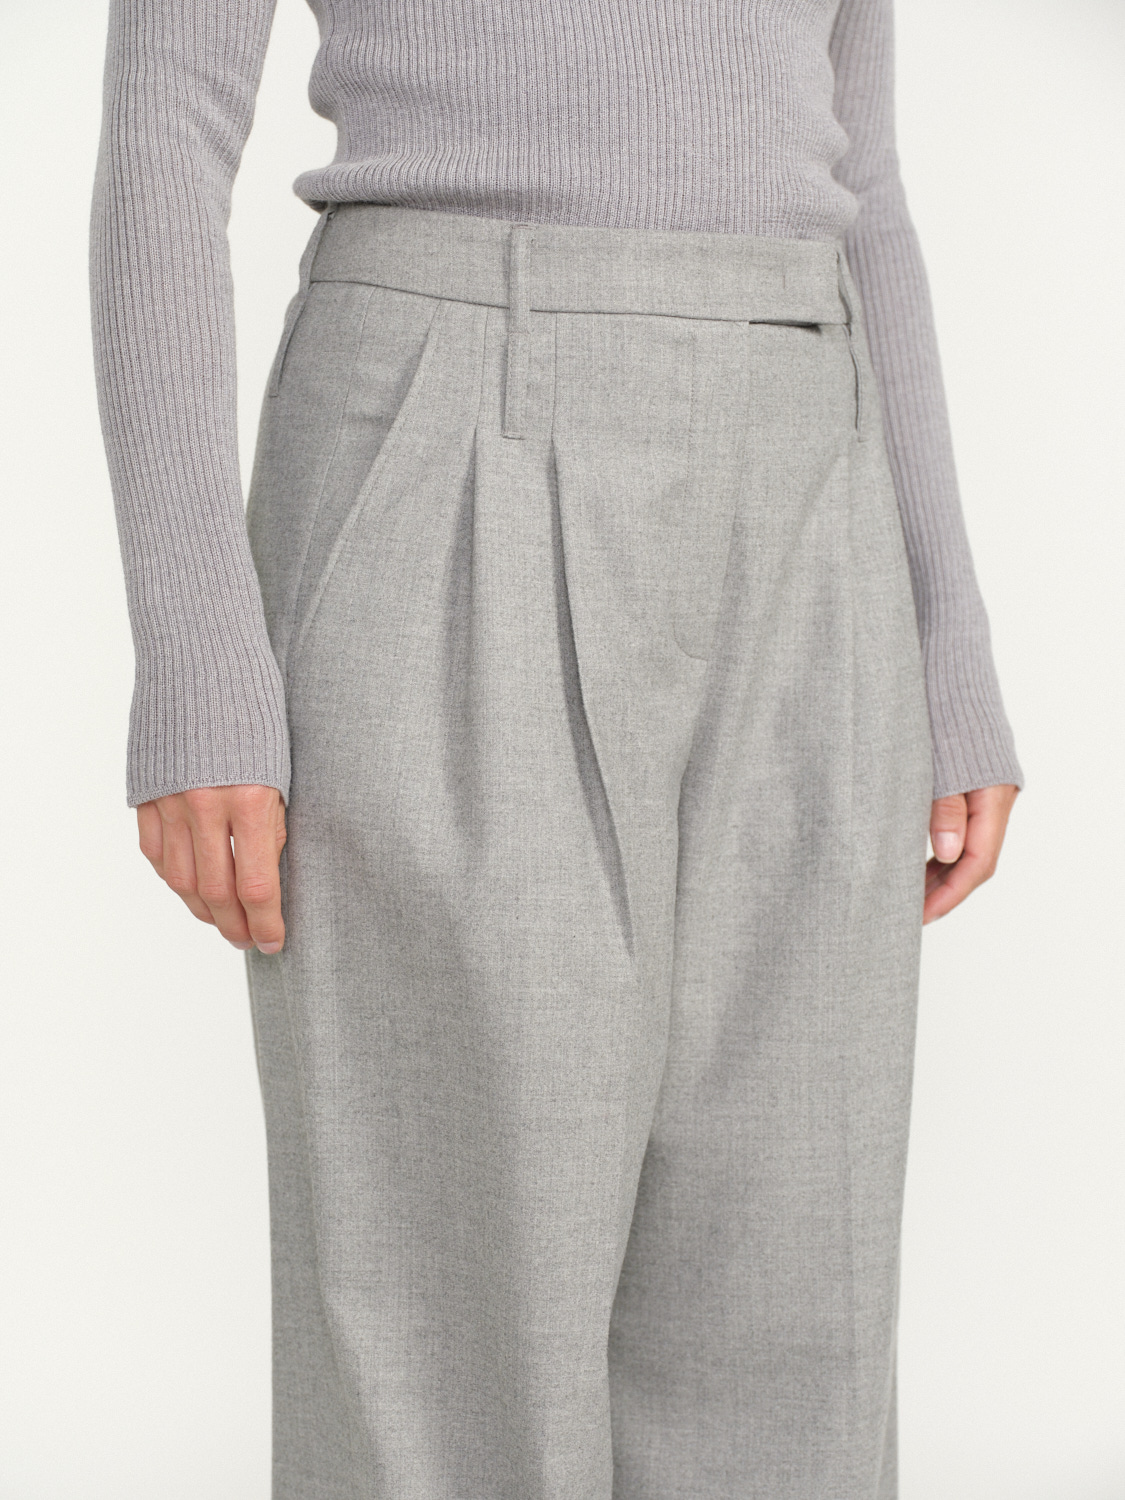 Seductive Giselle - Pantalones de lana plisados gris 34